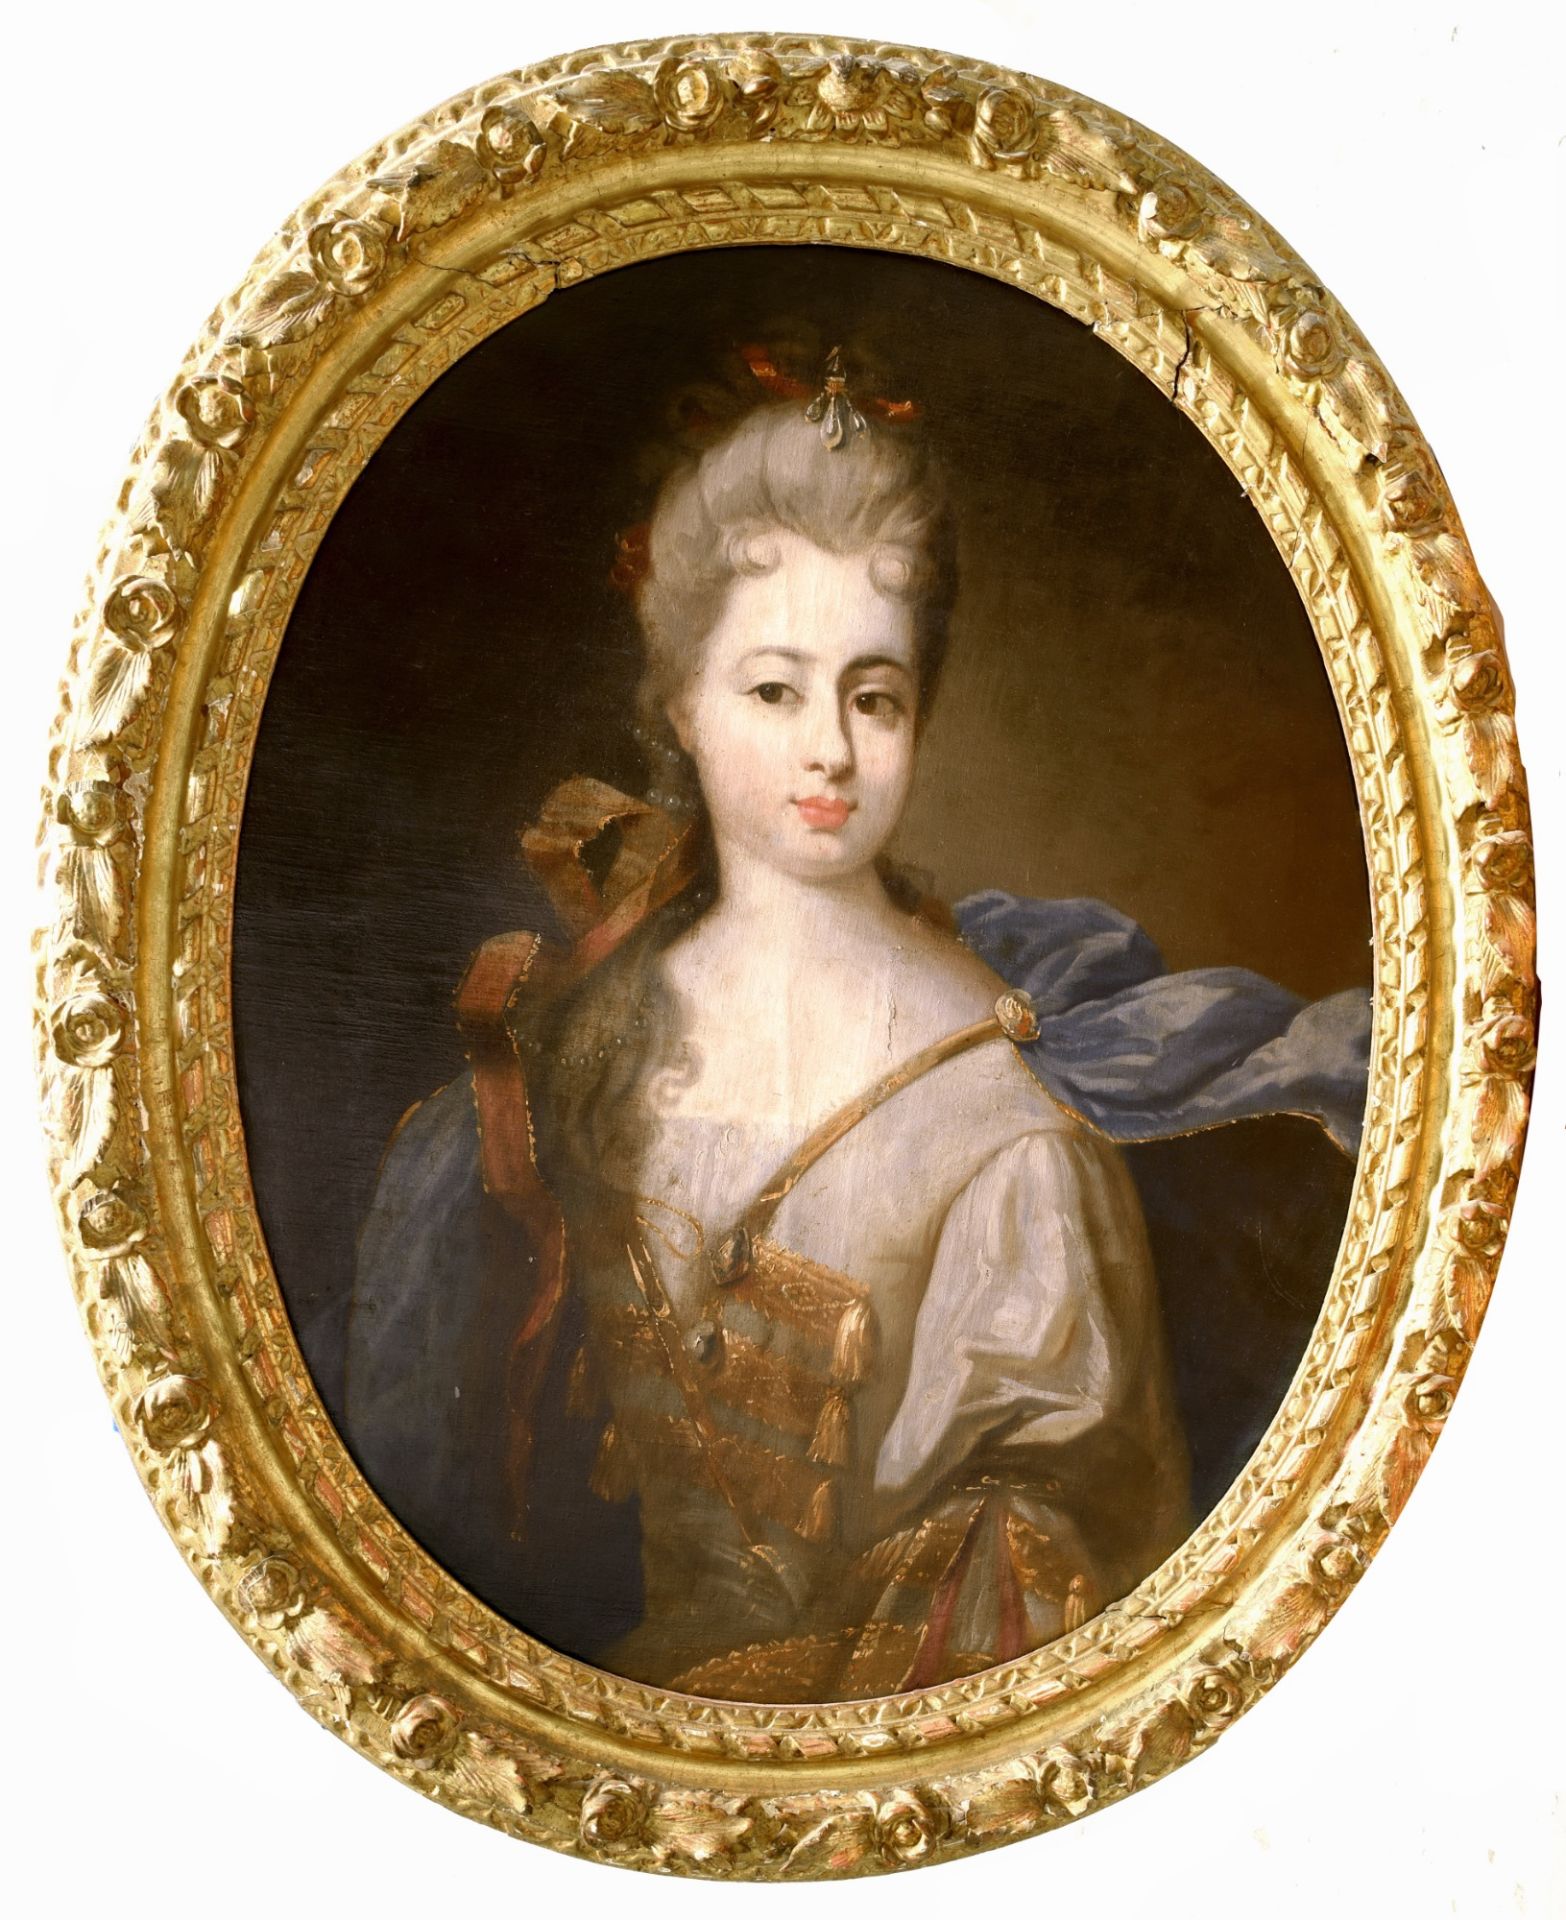 DANS LE GOÛT DE SIMON BELLE (1674-1734)